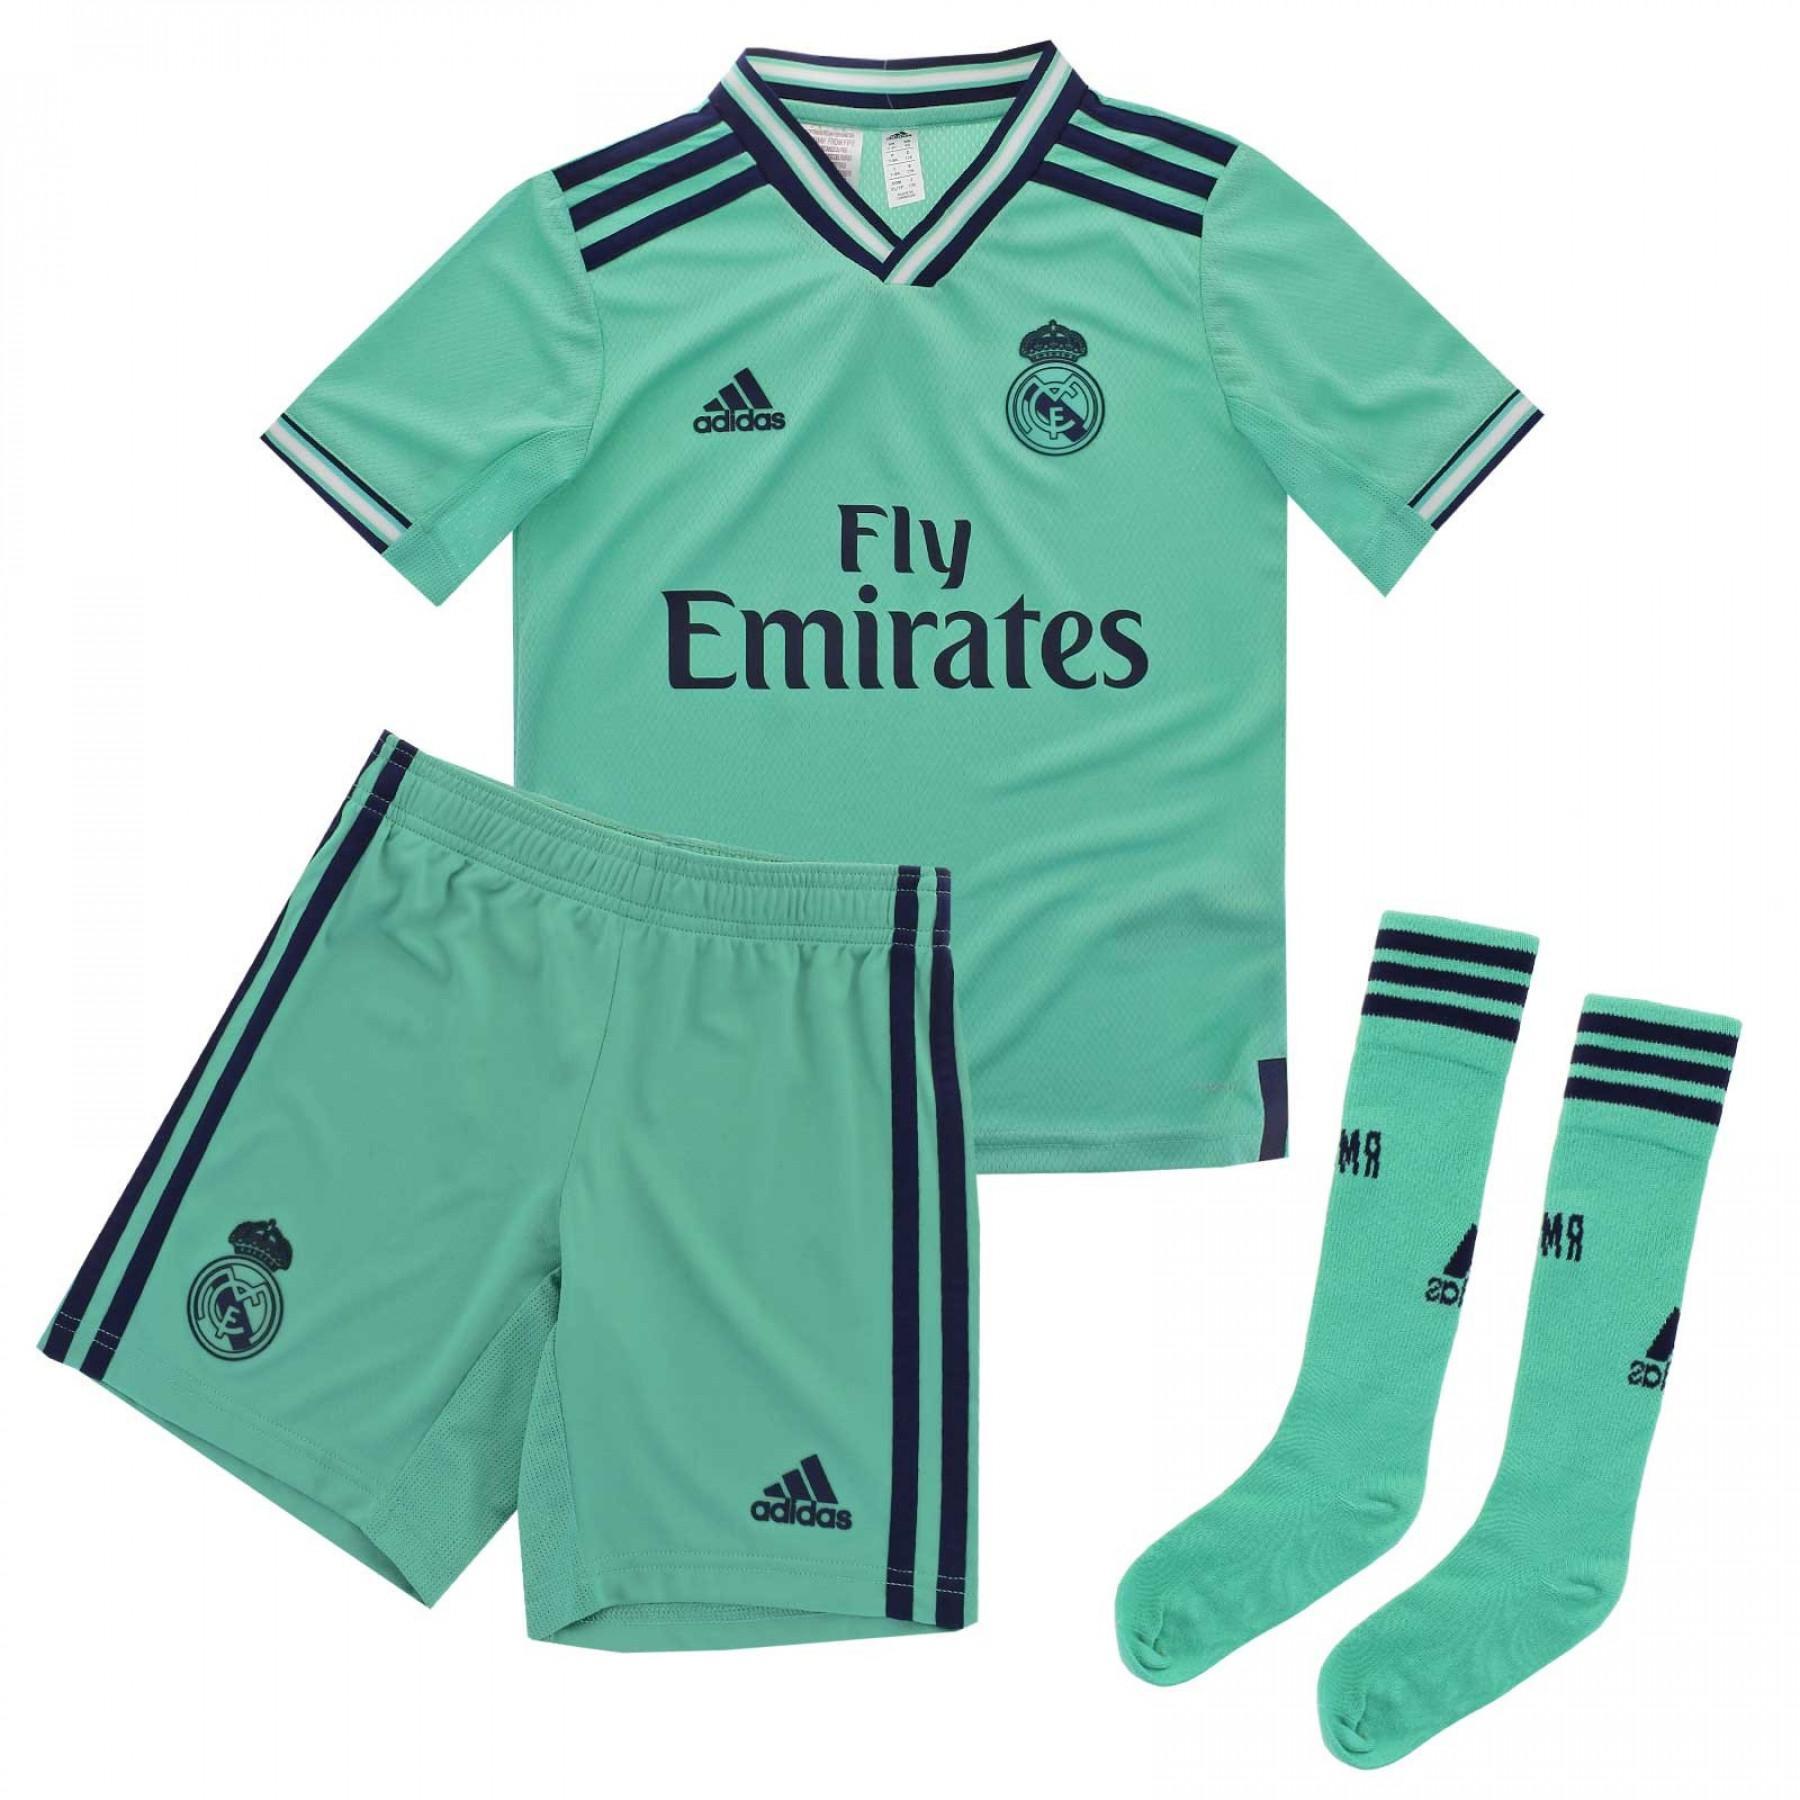 Mini-kit trzeci Real Madrid 2019/20